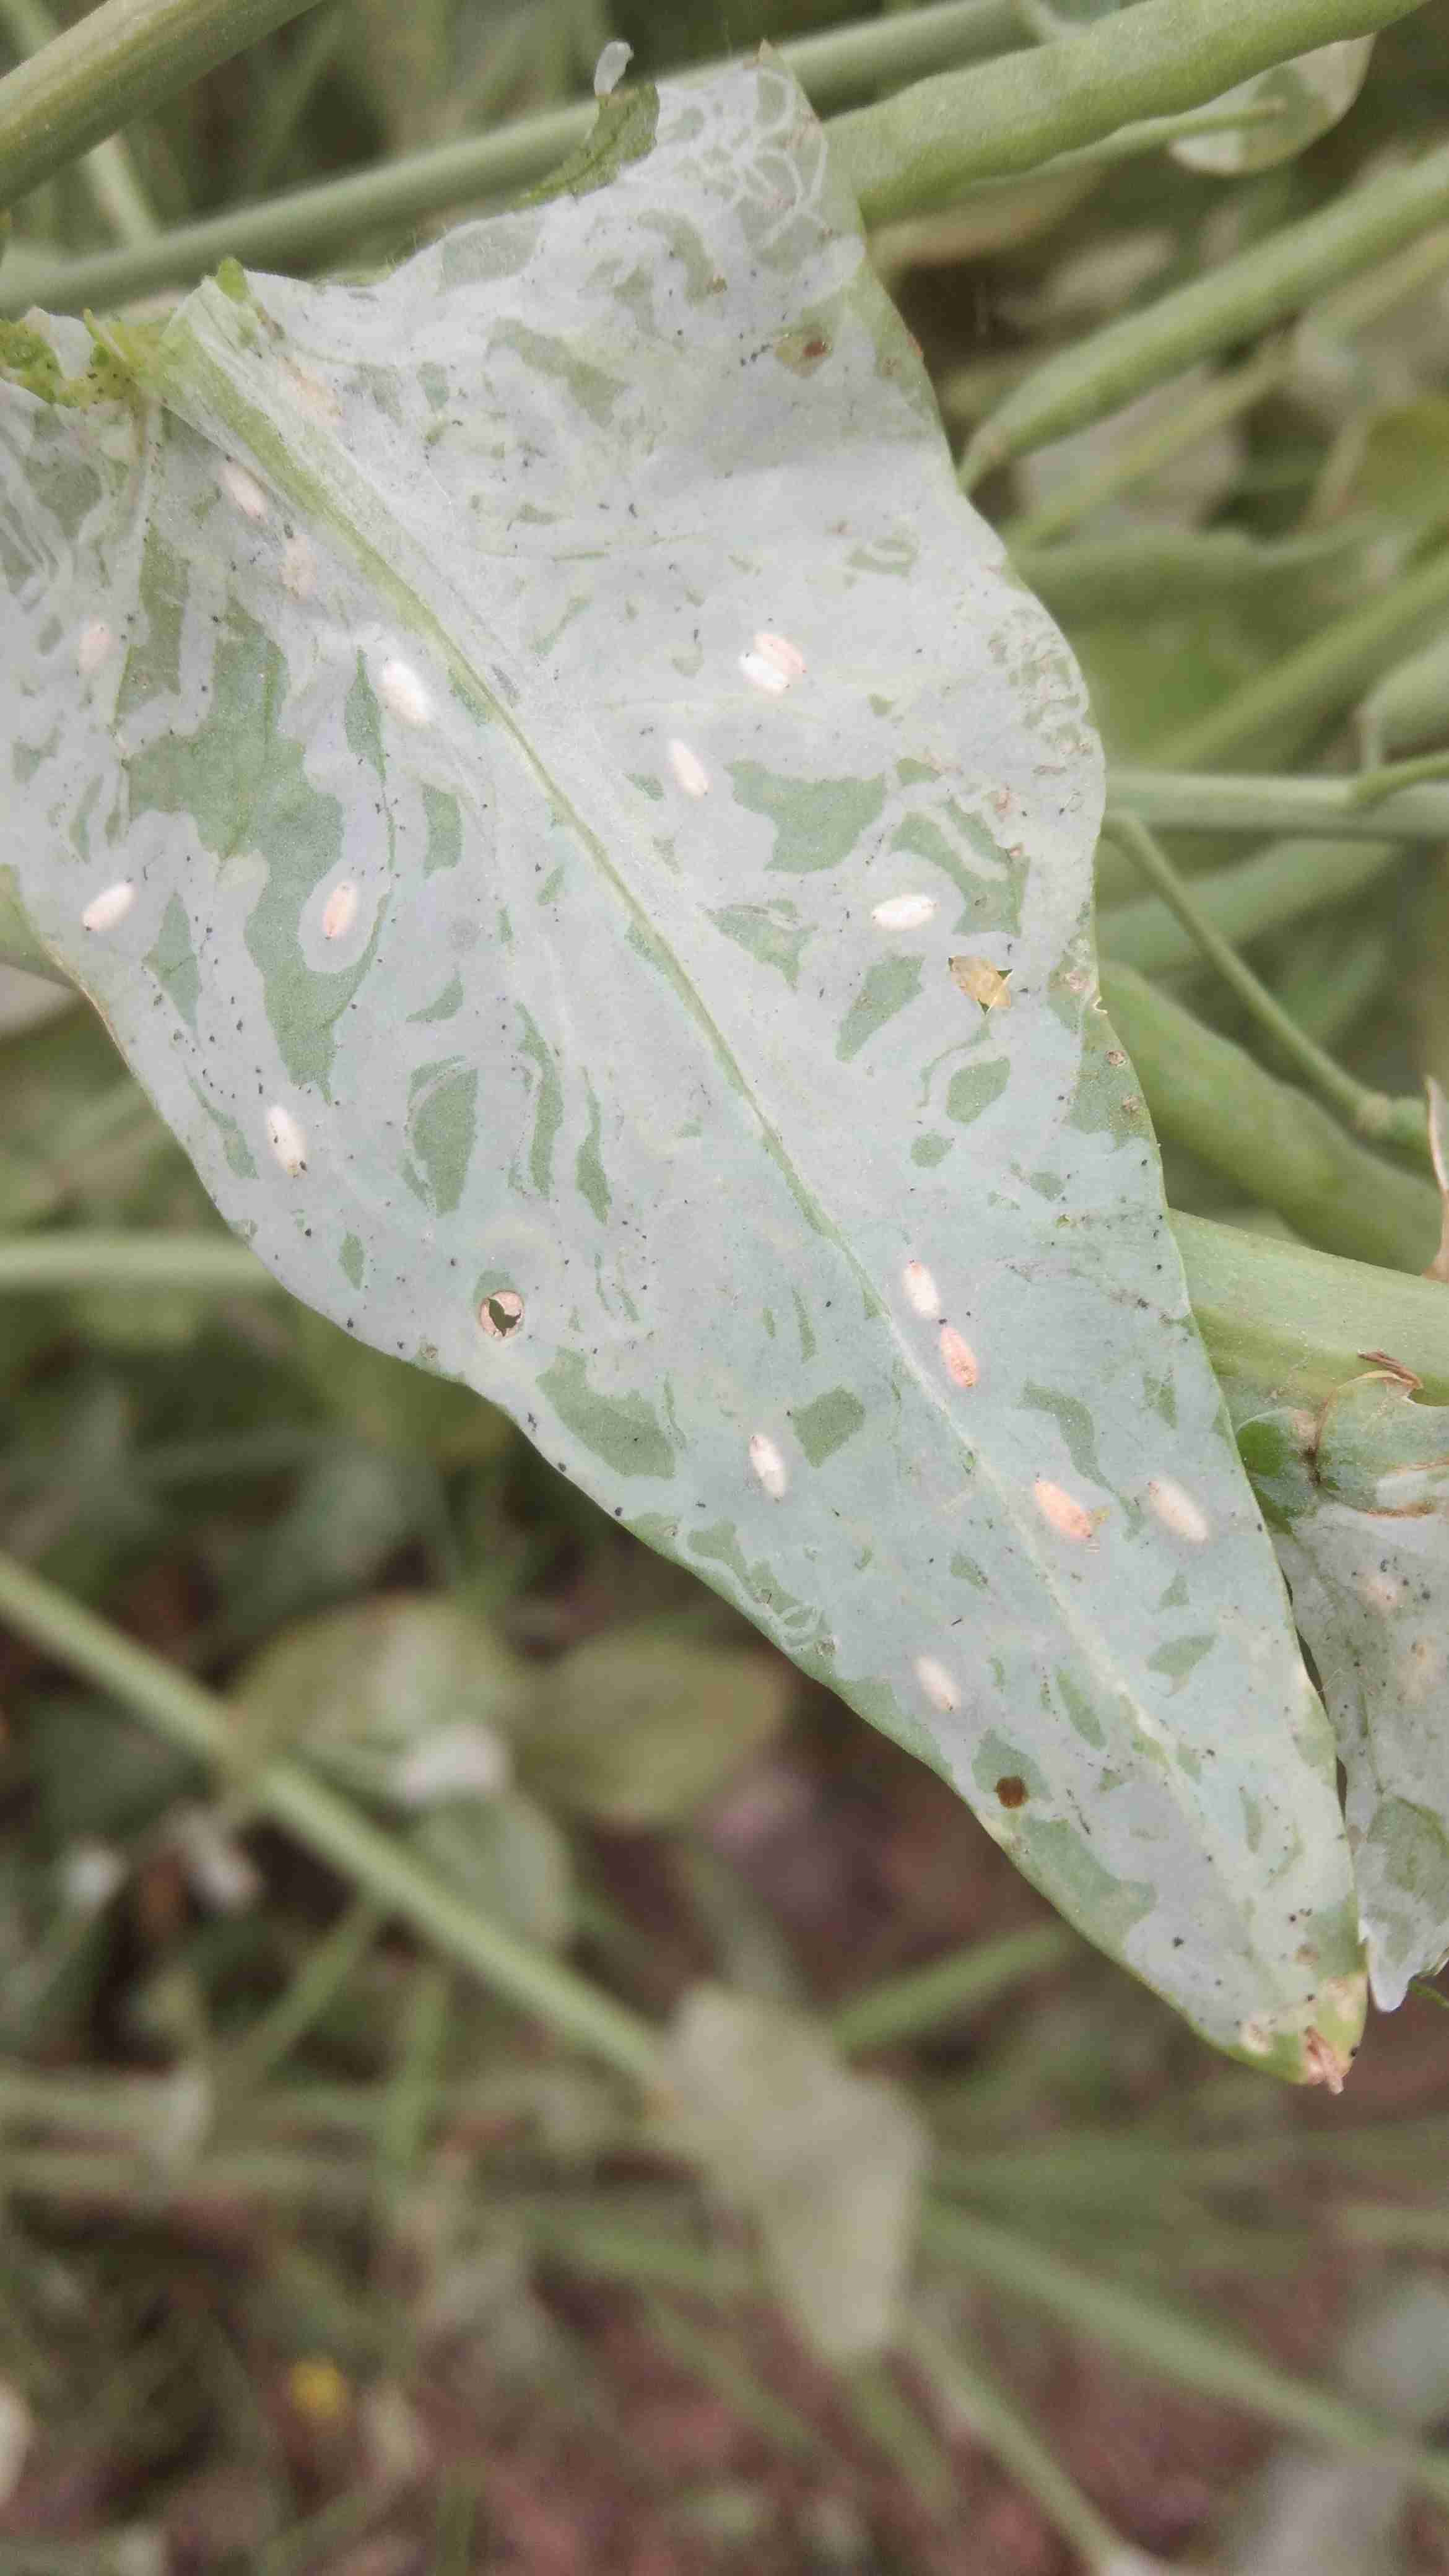 的油菜叶面有白色像虫子爬状的不规则条纹背面有白色虫卵状的小突起